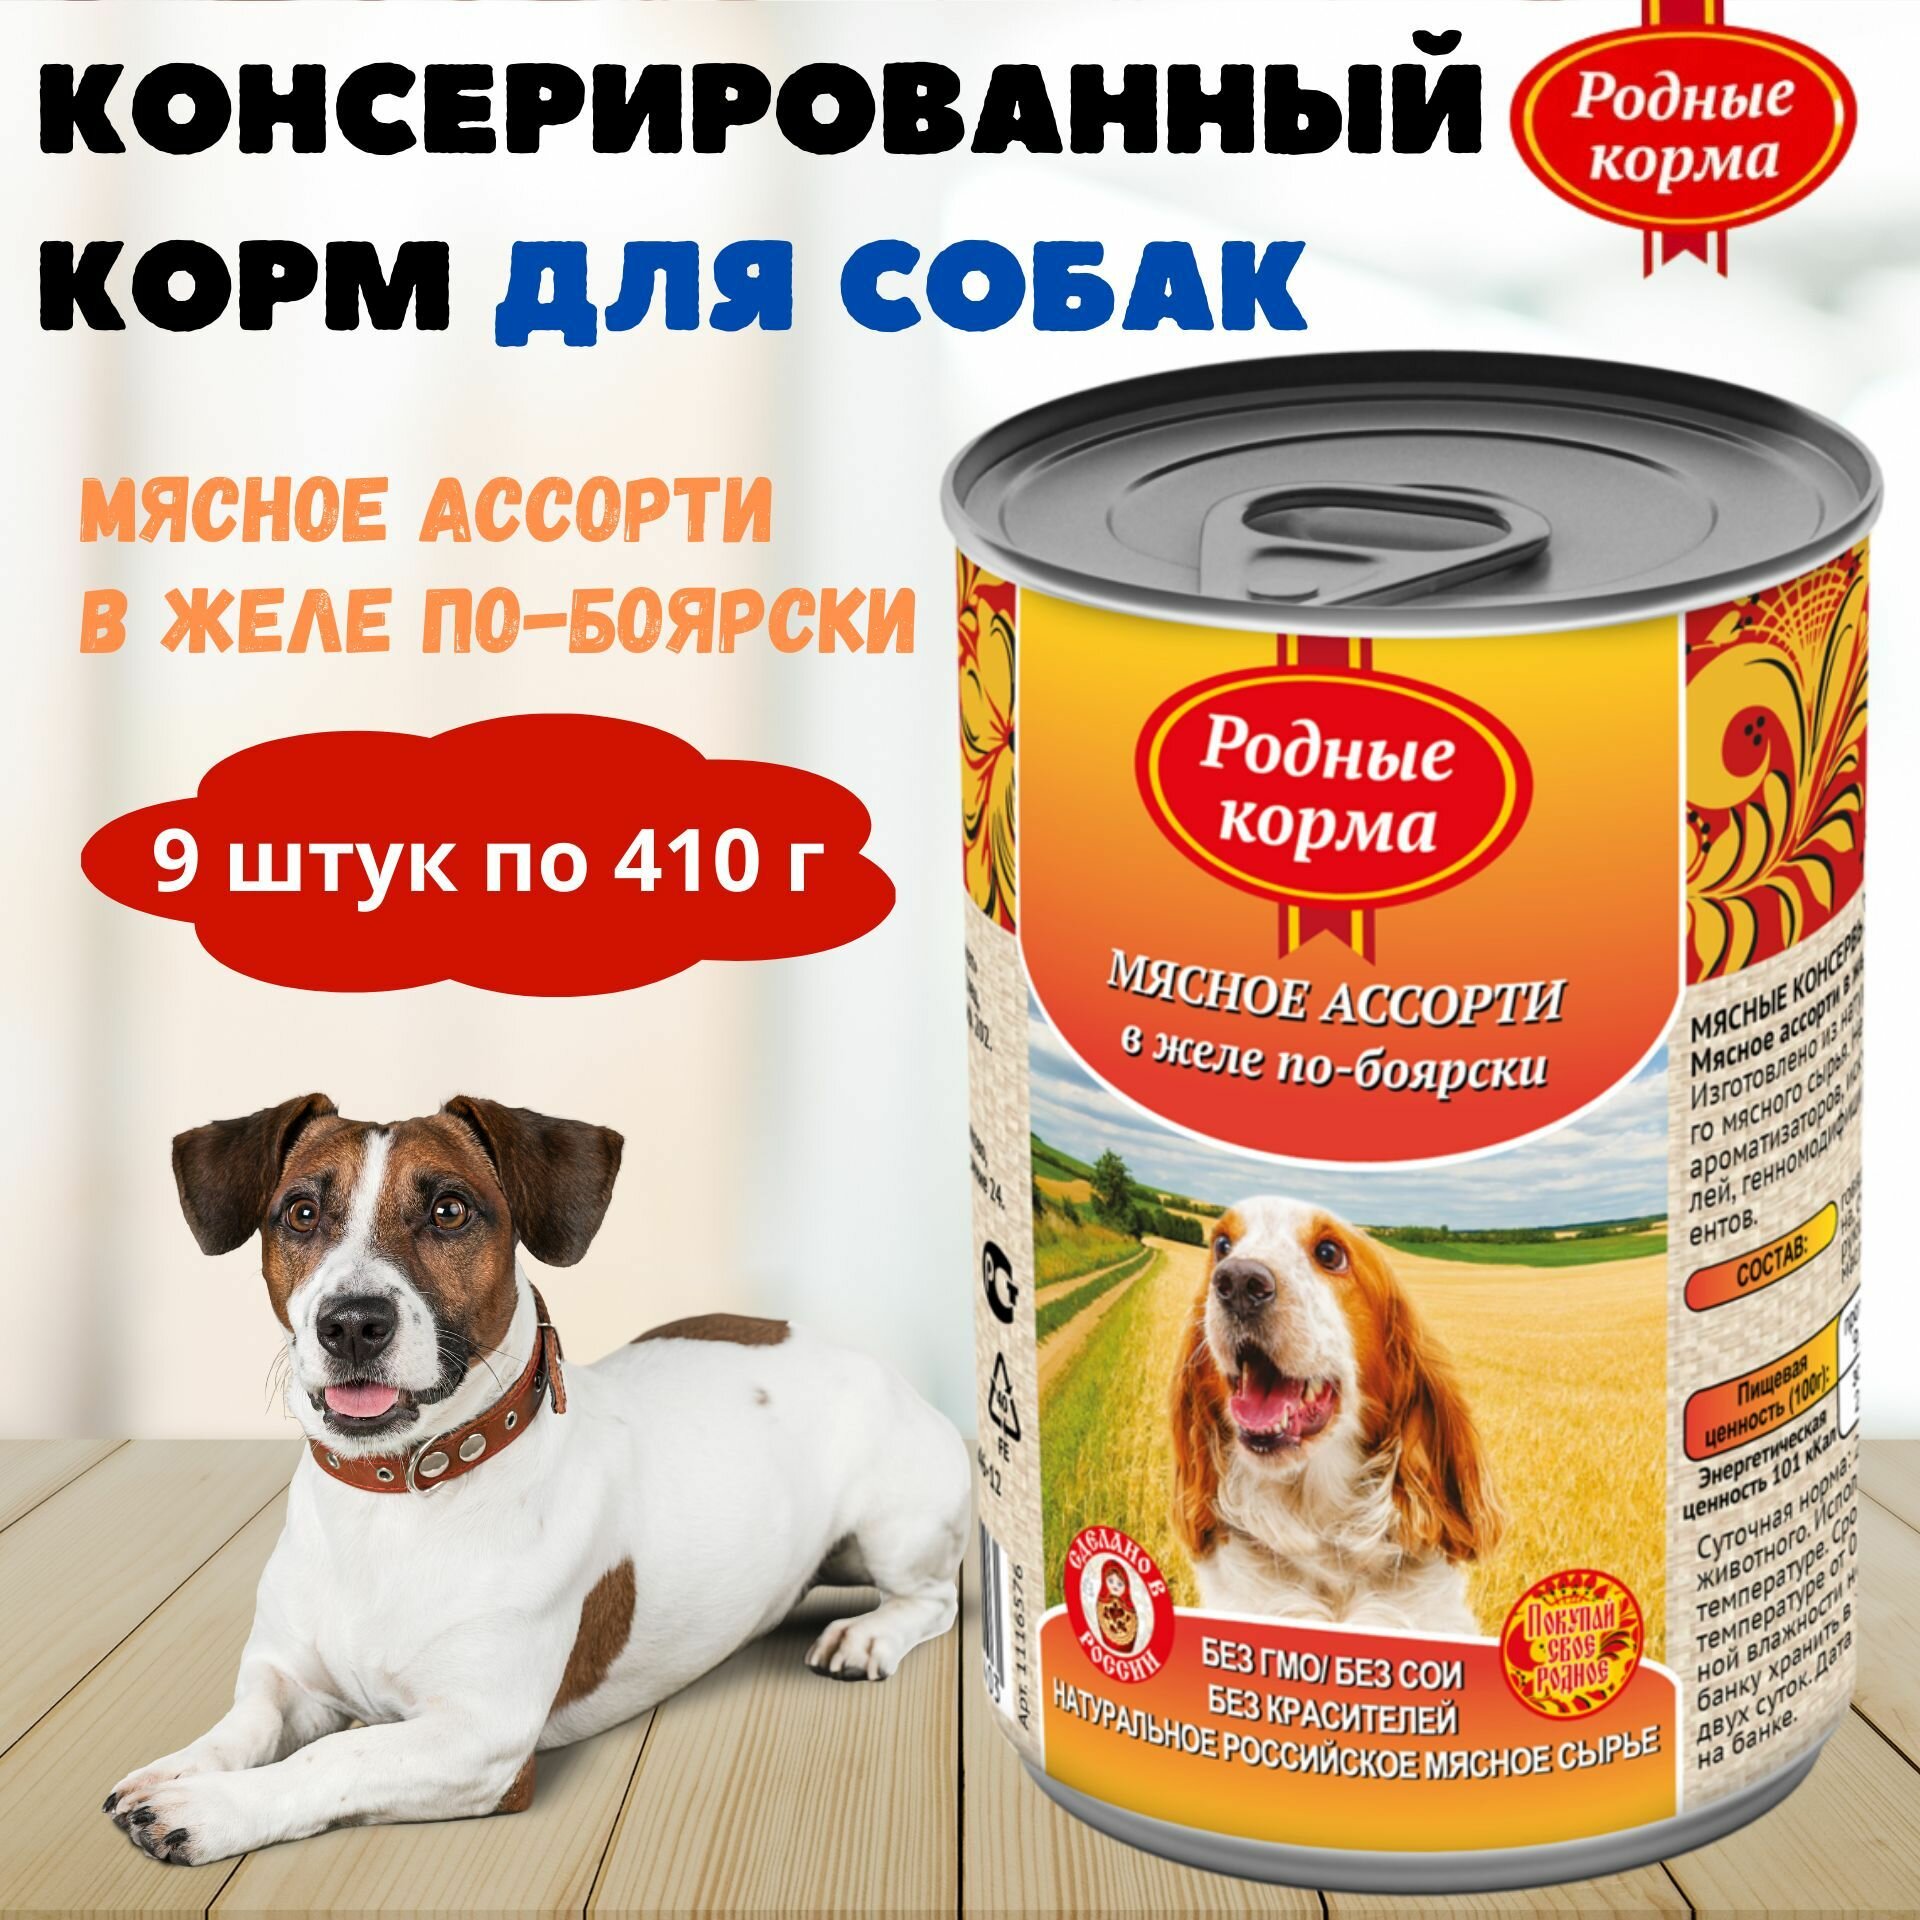 Консервы для собак мясное ассорти в желе по-боярски, родные корма, 9 штук по 410 г